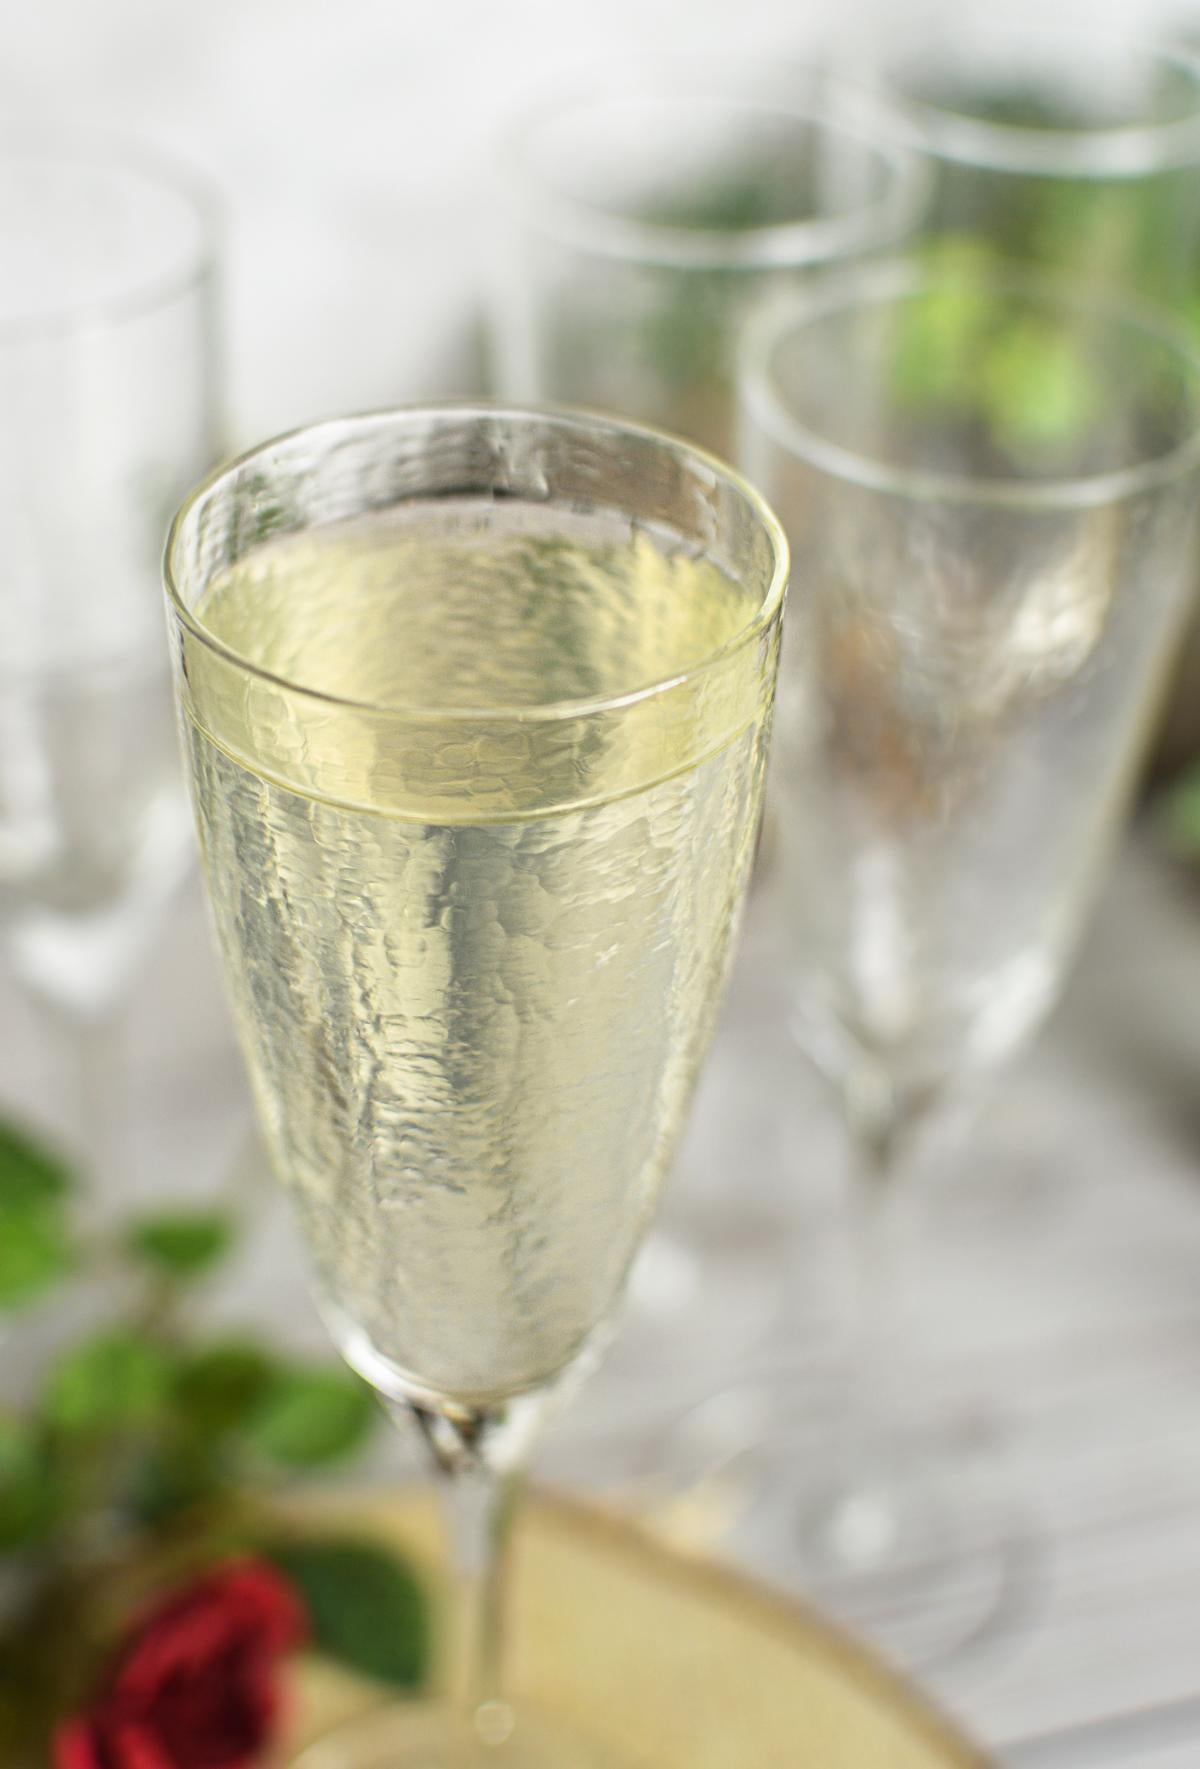 Verres à champagne faits main Sendez dans un pack de 6 verres à champagne verres à champagne Prosecco